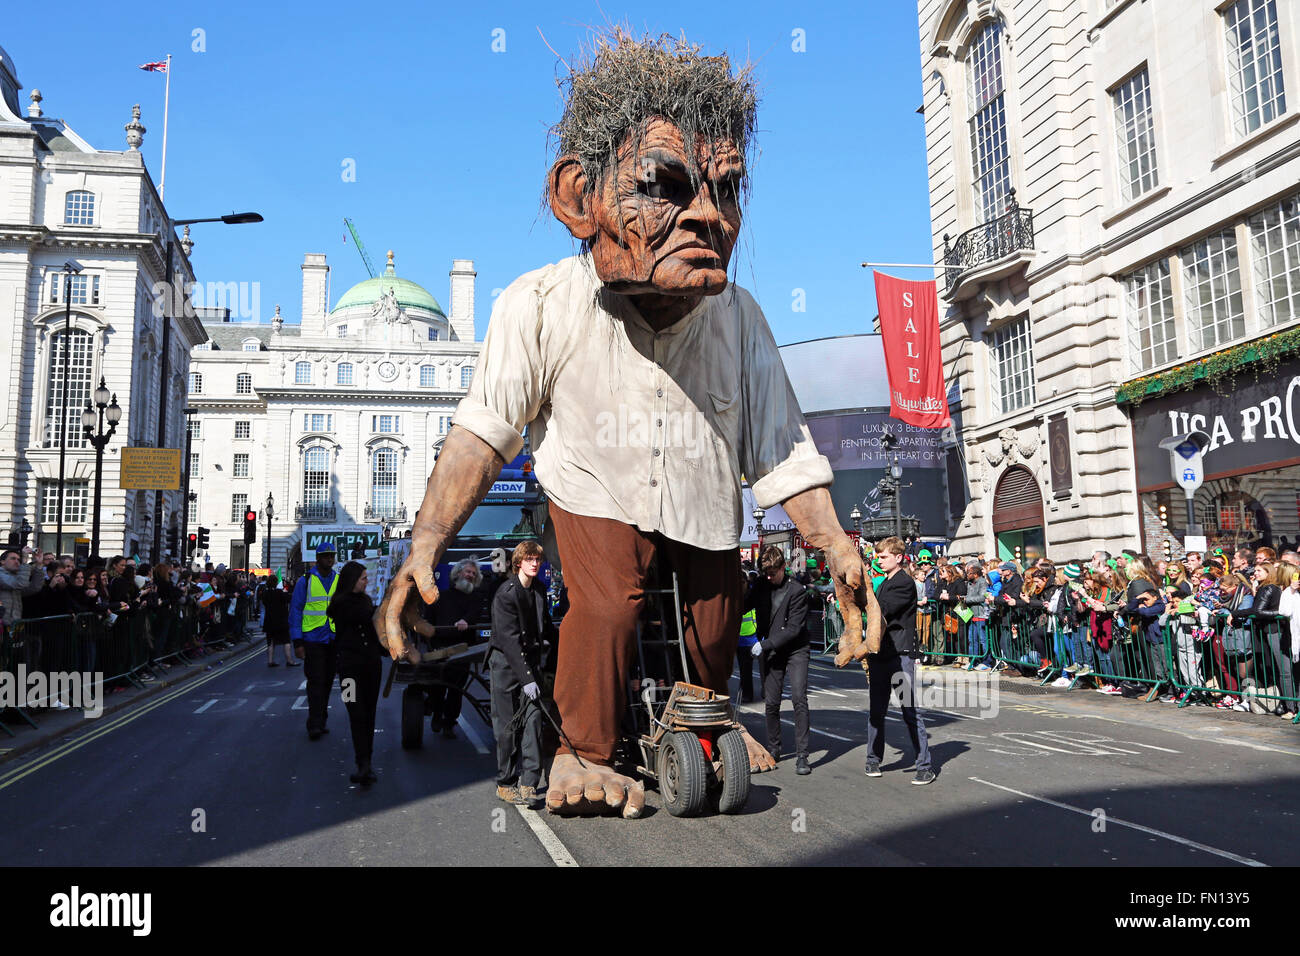 Londres, Royaume-Uni. 13 mars 2016. Crom, un géant dix-sept pieds de haut puppet dans la Parade de la St Patrick 2016 à Piccadilly Circus à Londres Crédit : Paul Brown/Alamy Live News Banque D'Images